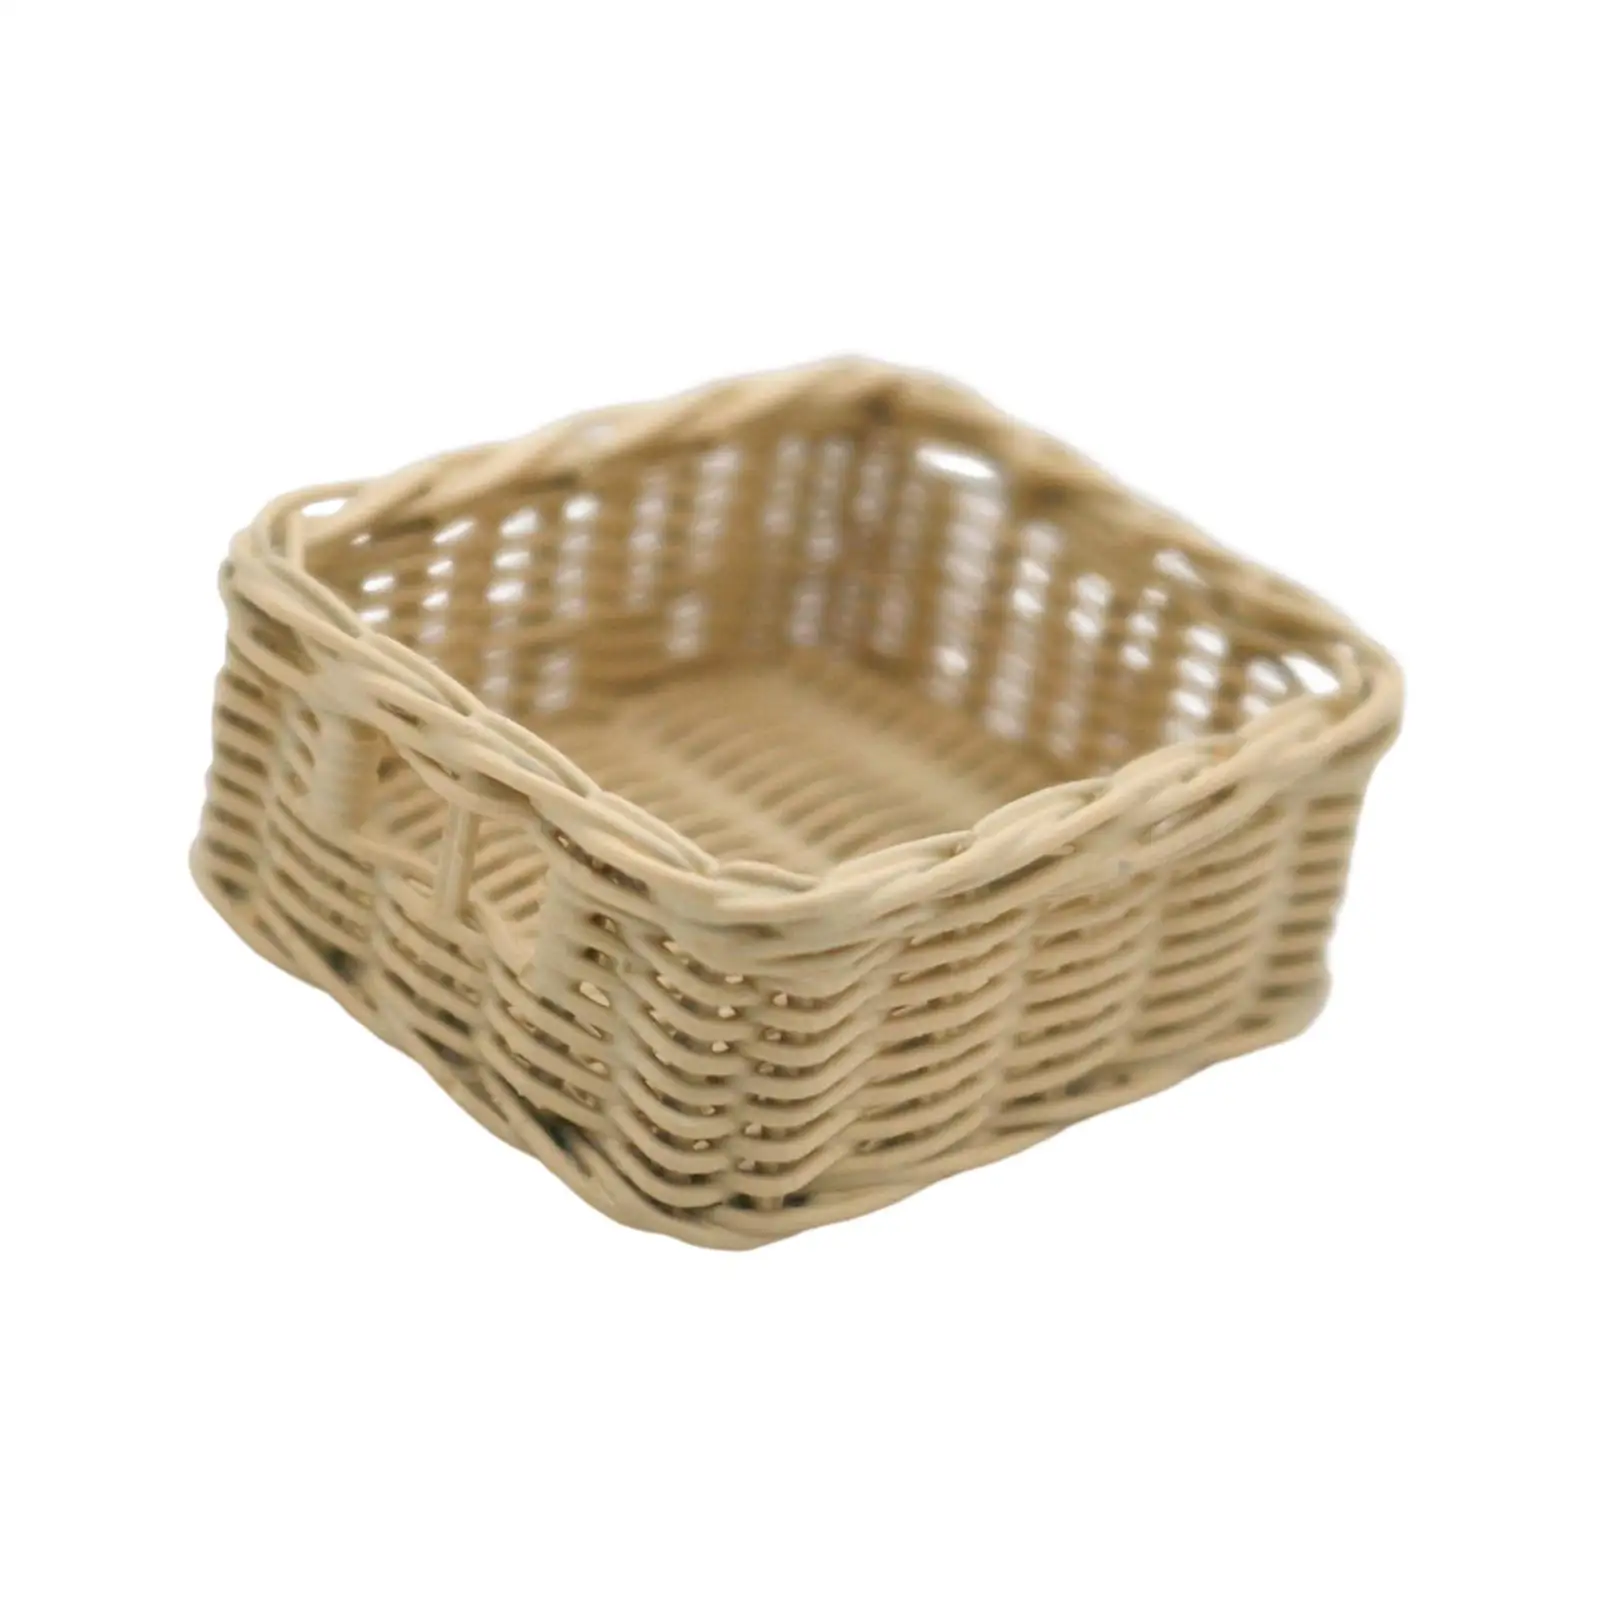 1:6 Dollhouse Storage Basket Bread Basket Mini Resin Baskets Dollhouse Accessories for Dollhouse Bedroom Home Kitchen Garden